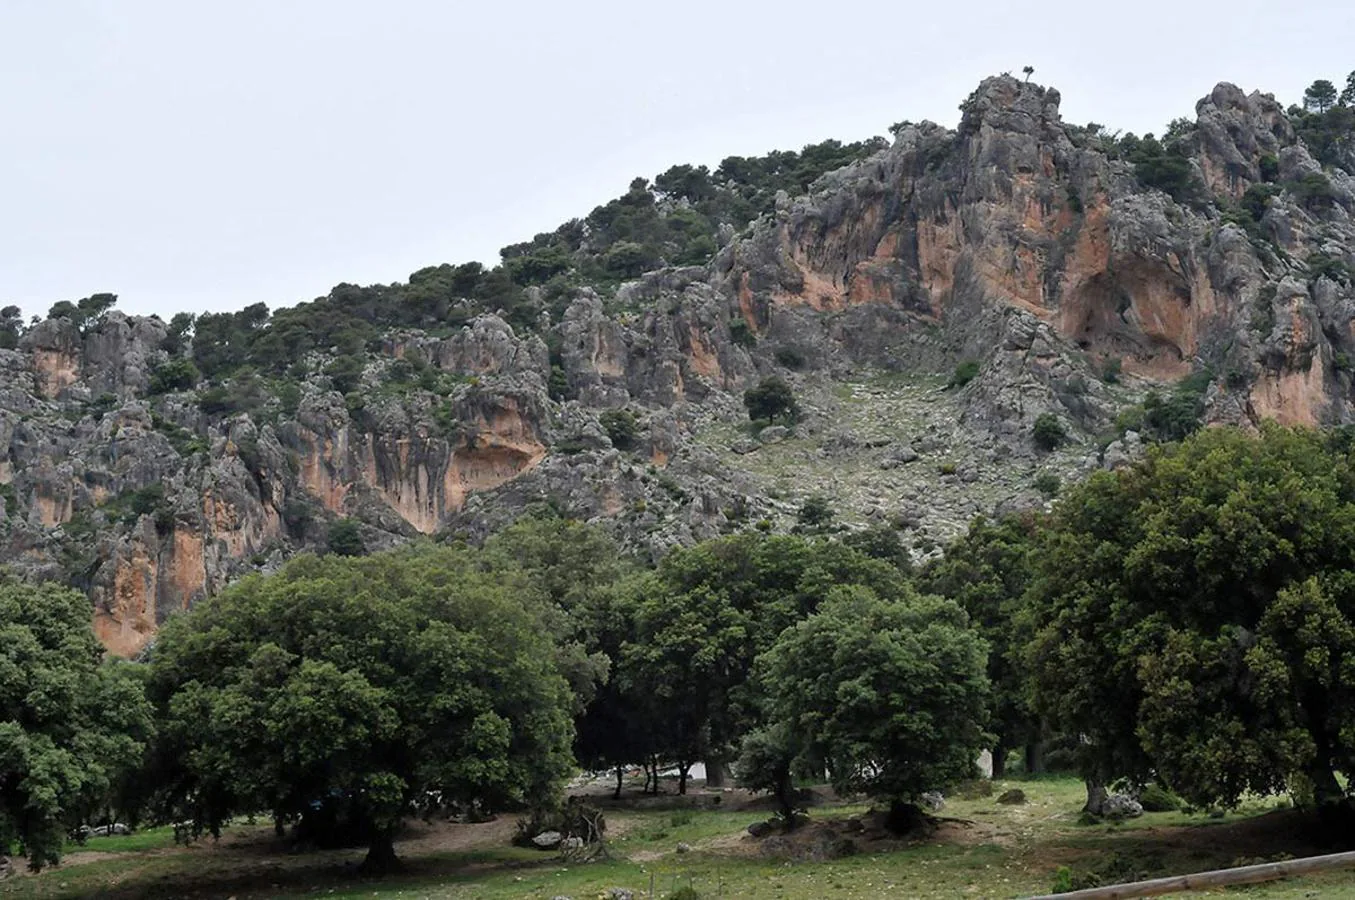 Los espacios naturales se han convertido en una nueva fuente de atracción hacia el medio rural y un aliciente económico para los pueblos. FOTO: Parque Natural de Sierra Mágina, Almería